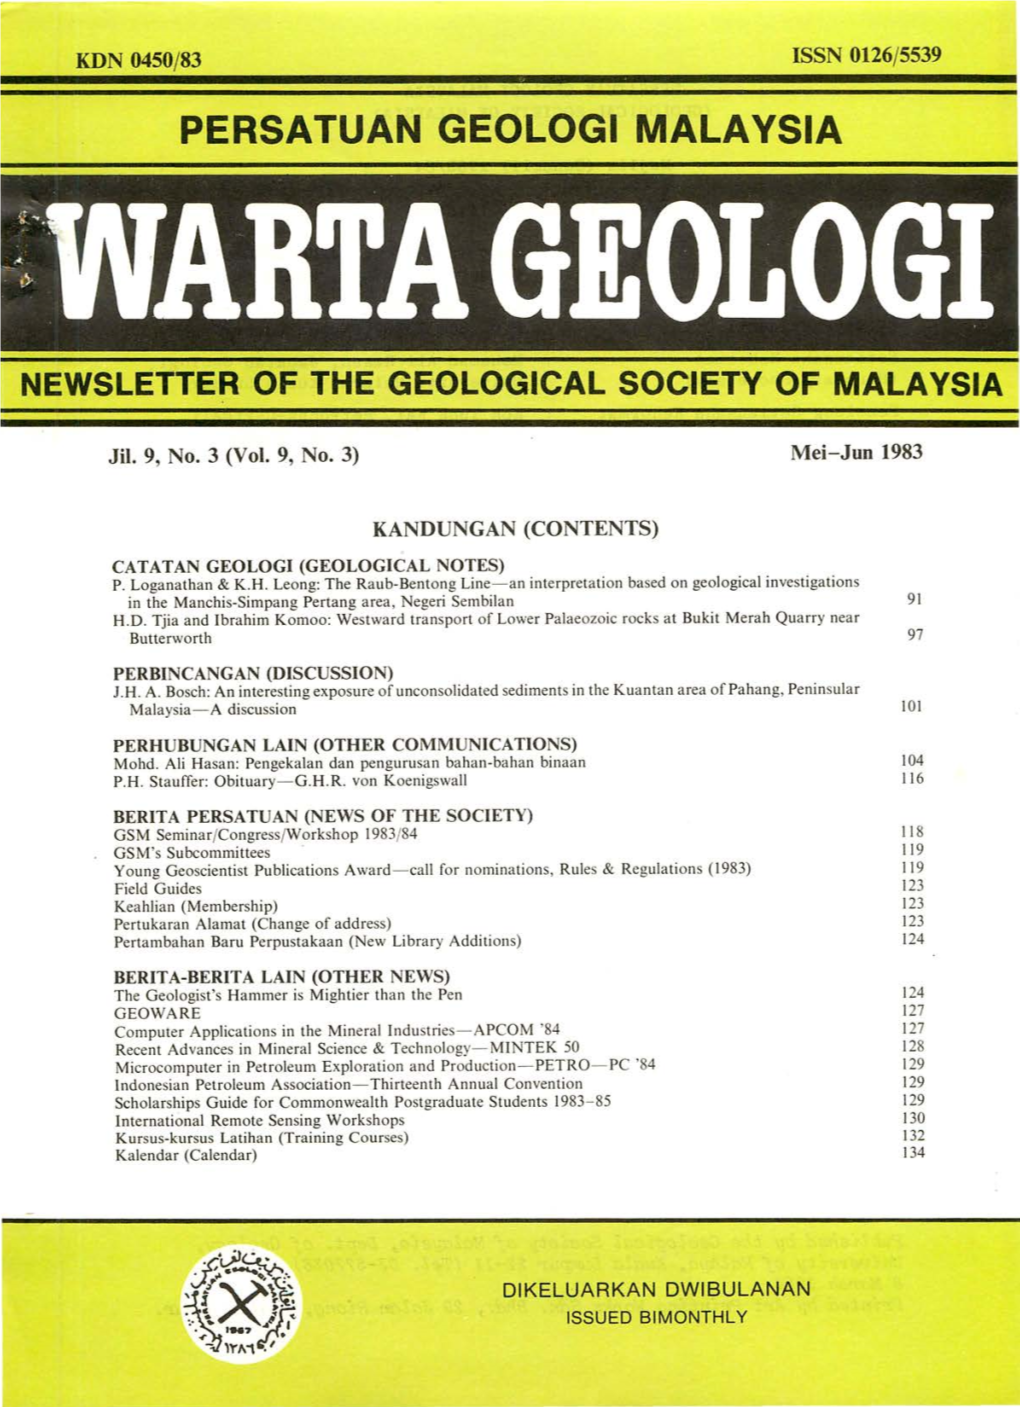 Persatuan Geologi Malaysia